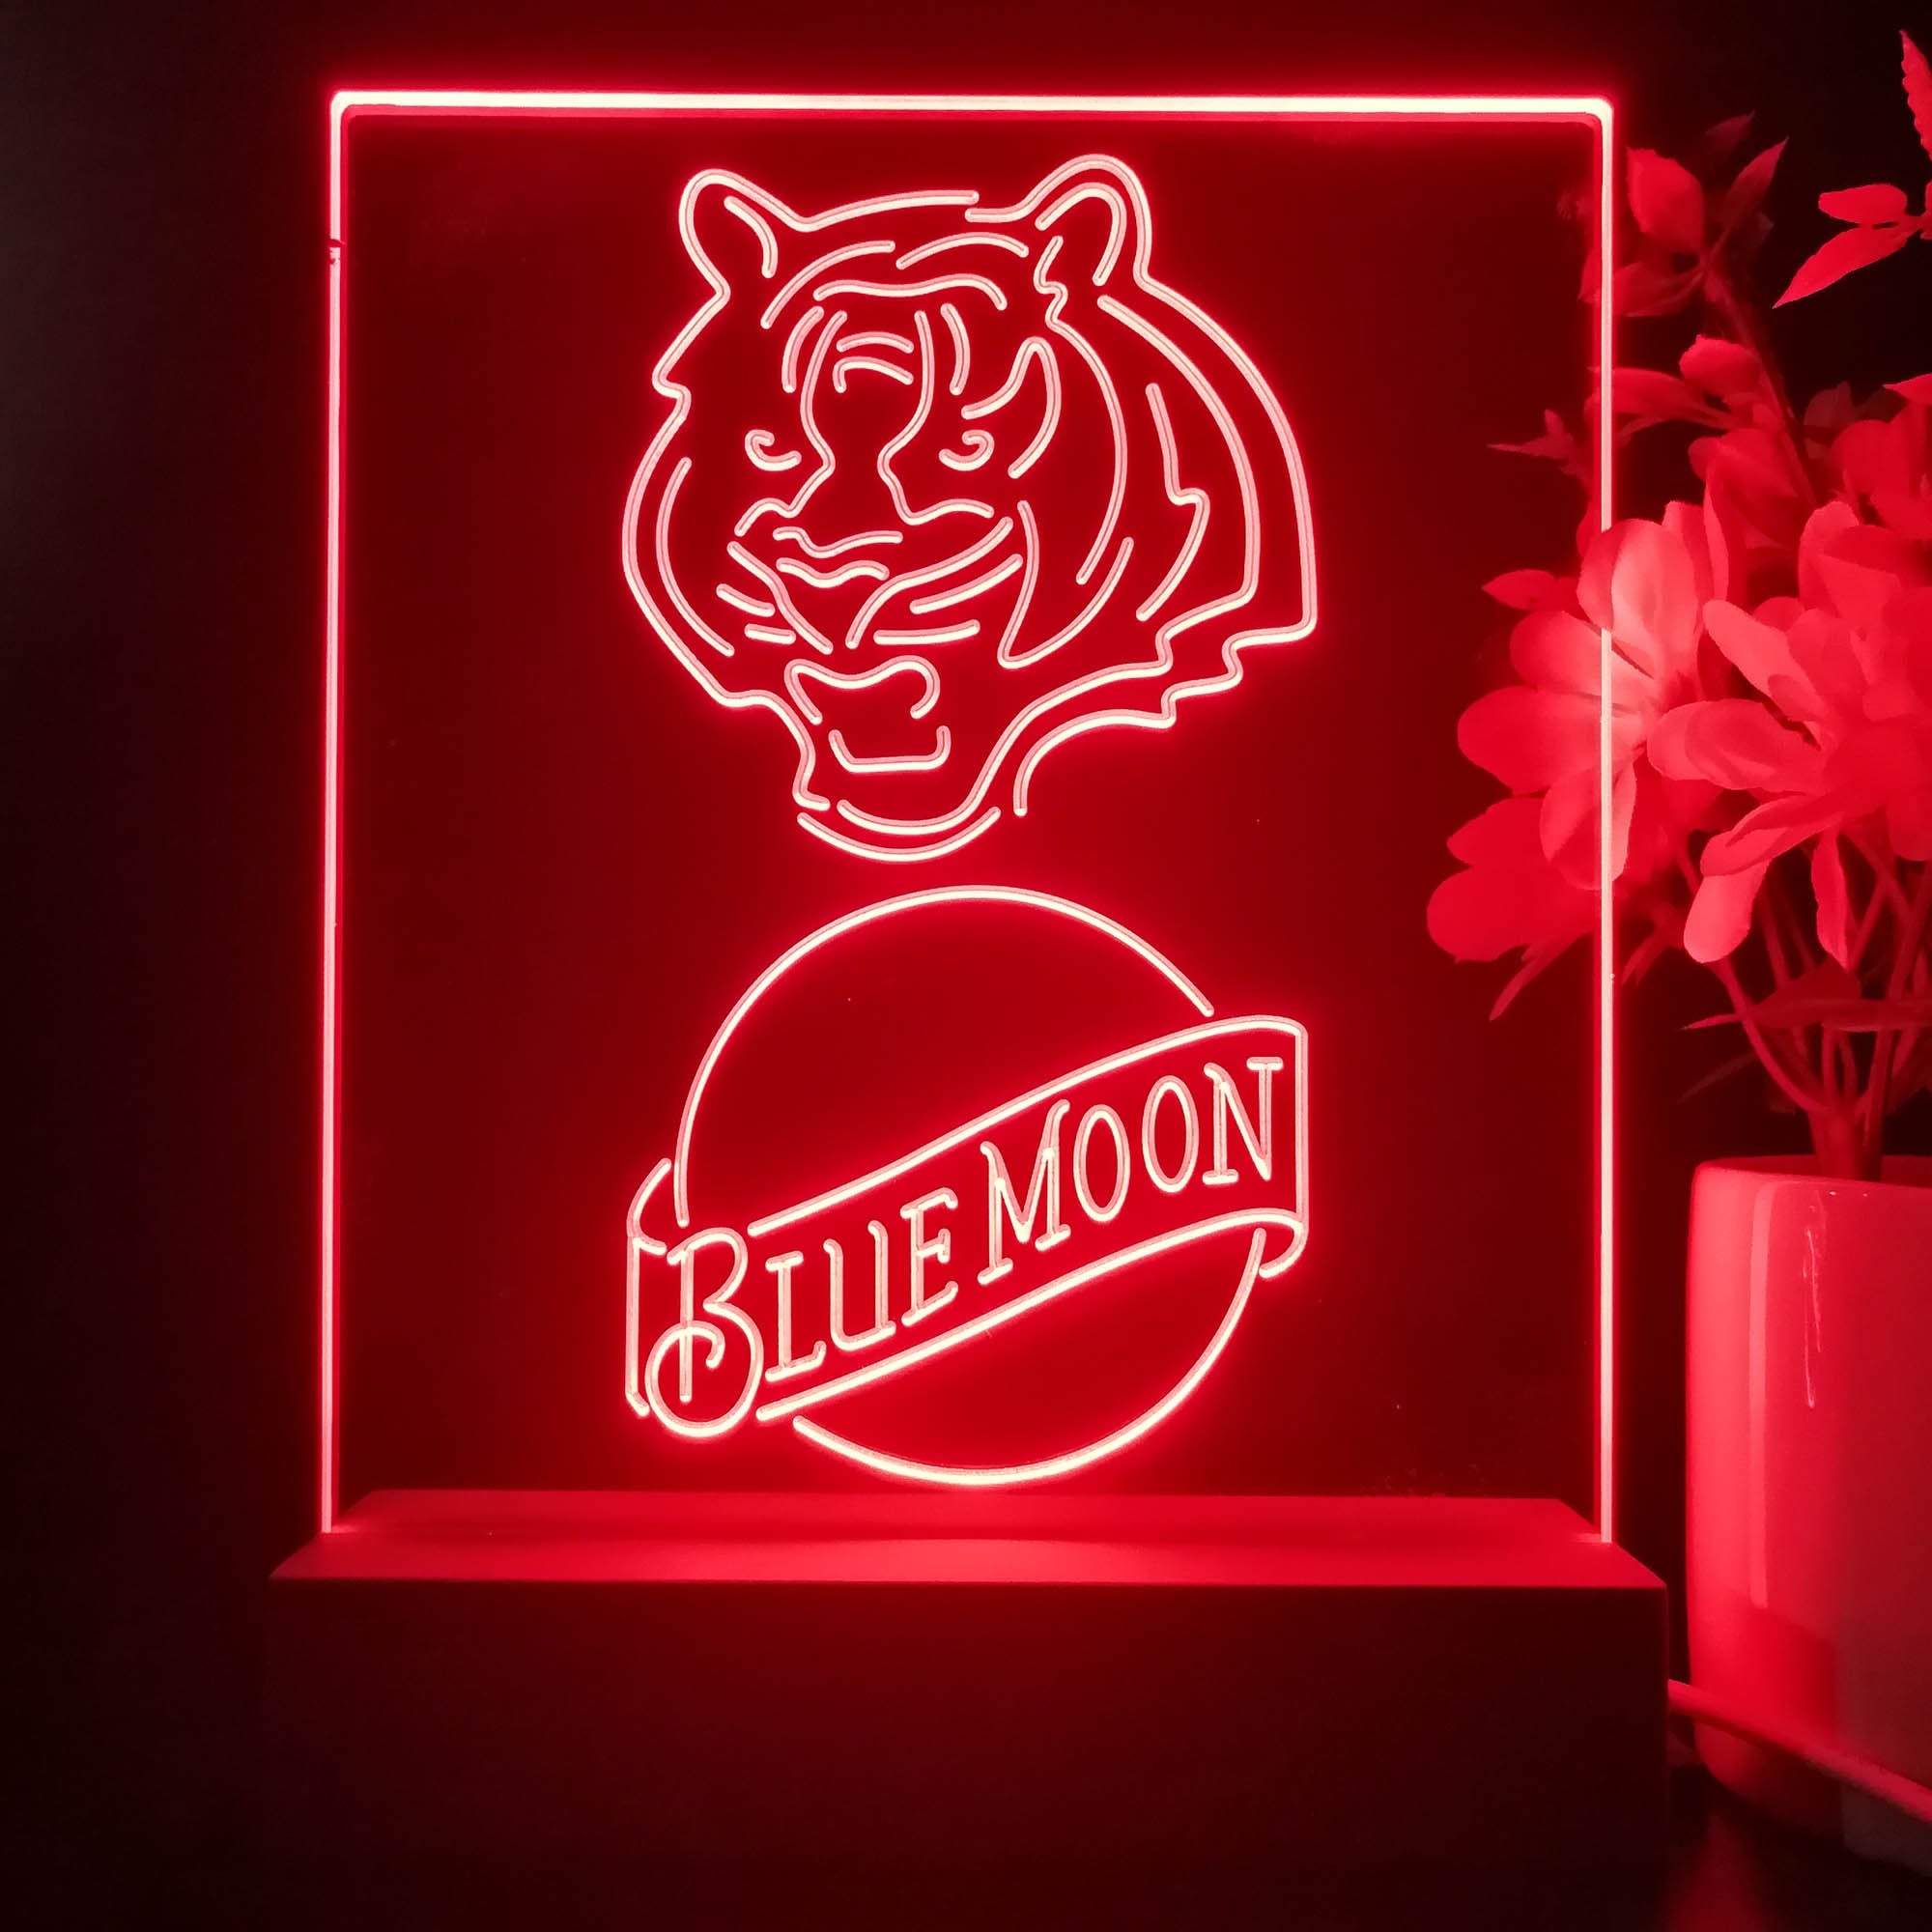 Cincinnati Bengals Blue Moon Neon Sign Pub Bar Lamp